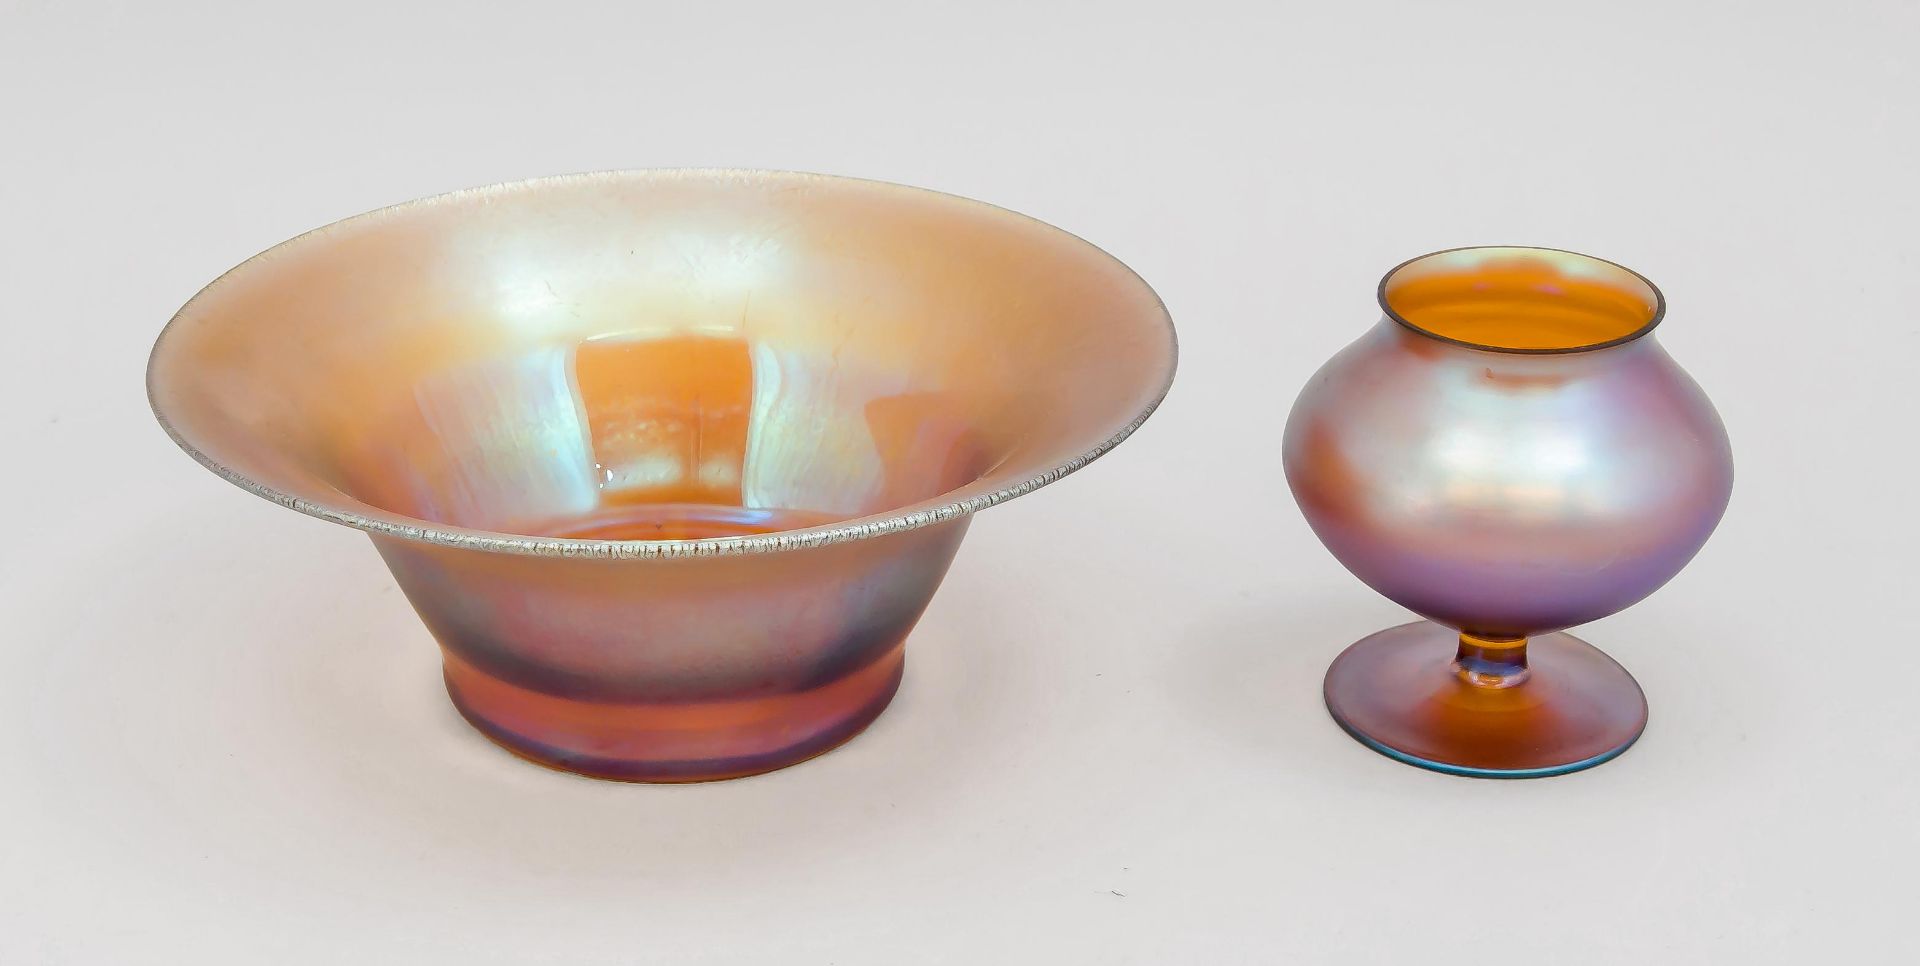 Runde Schale und Vase, WMF, um 1930/40, sog. Myra-Glas, Vase runder Scheibenfuß, kurzerSchaft,